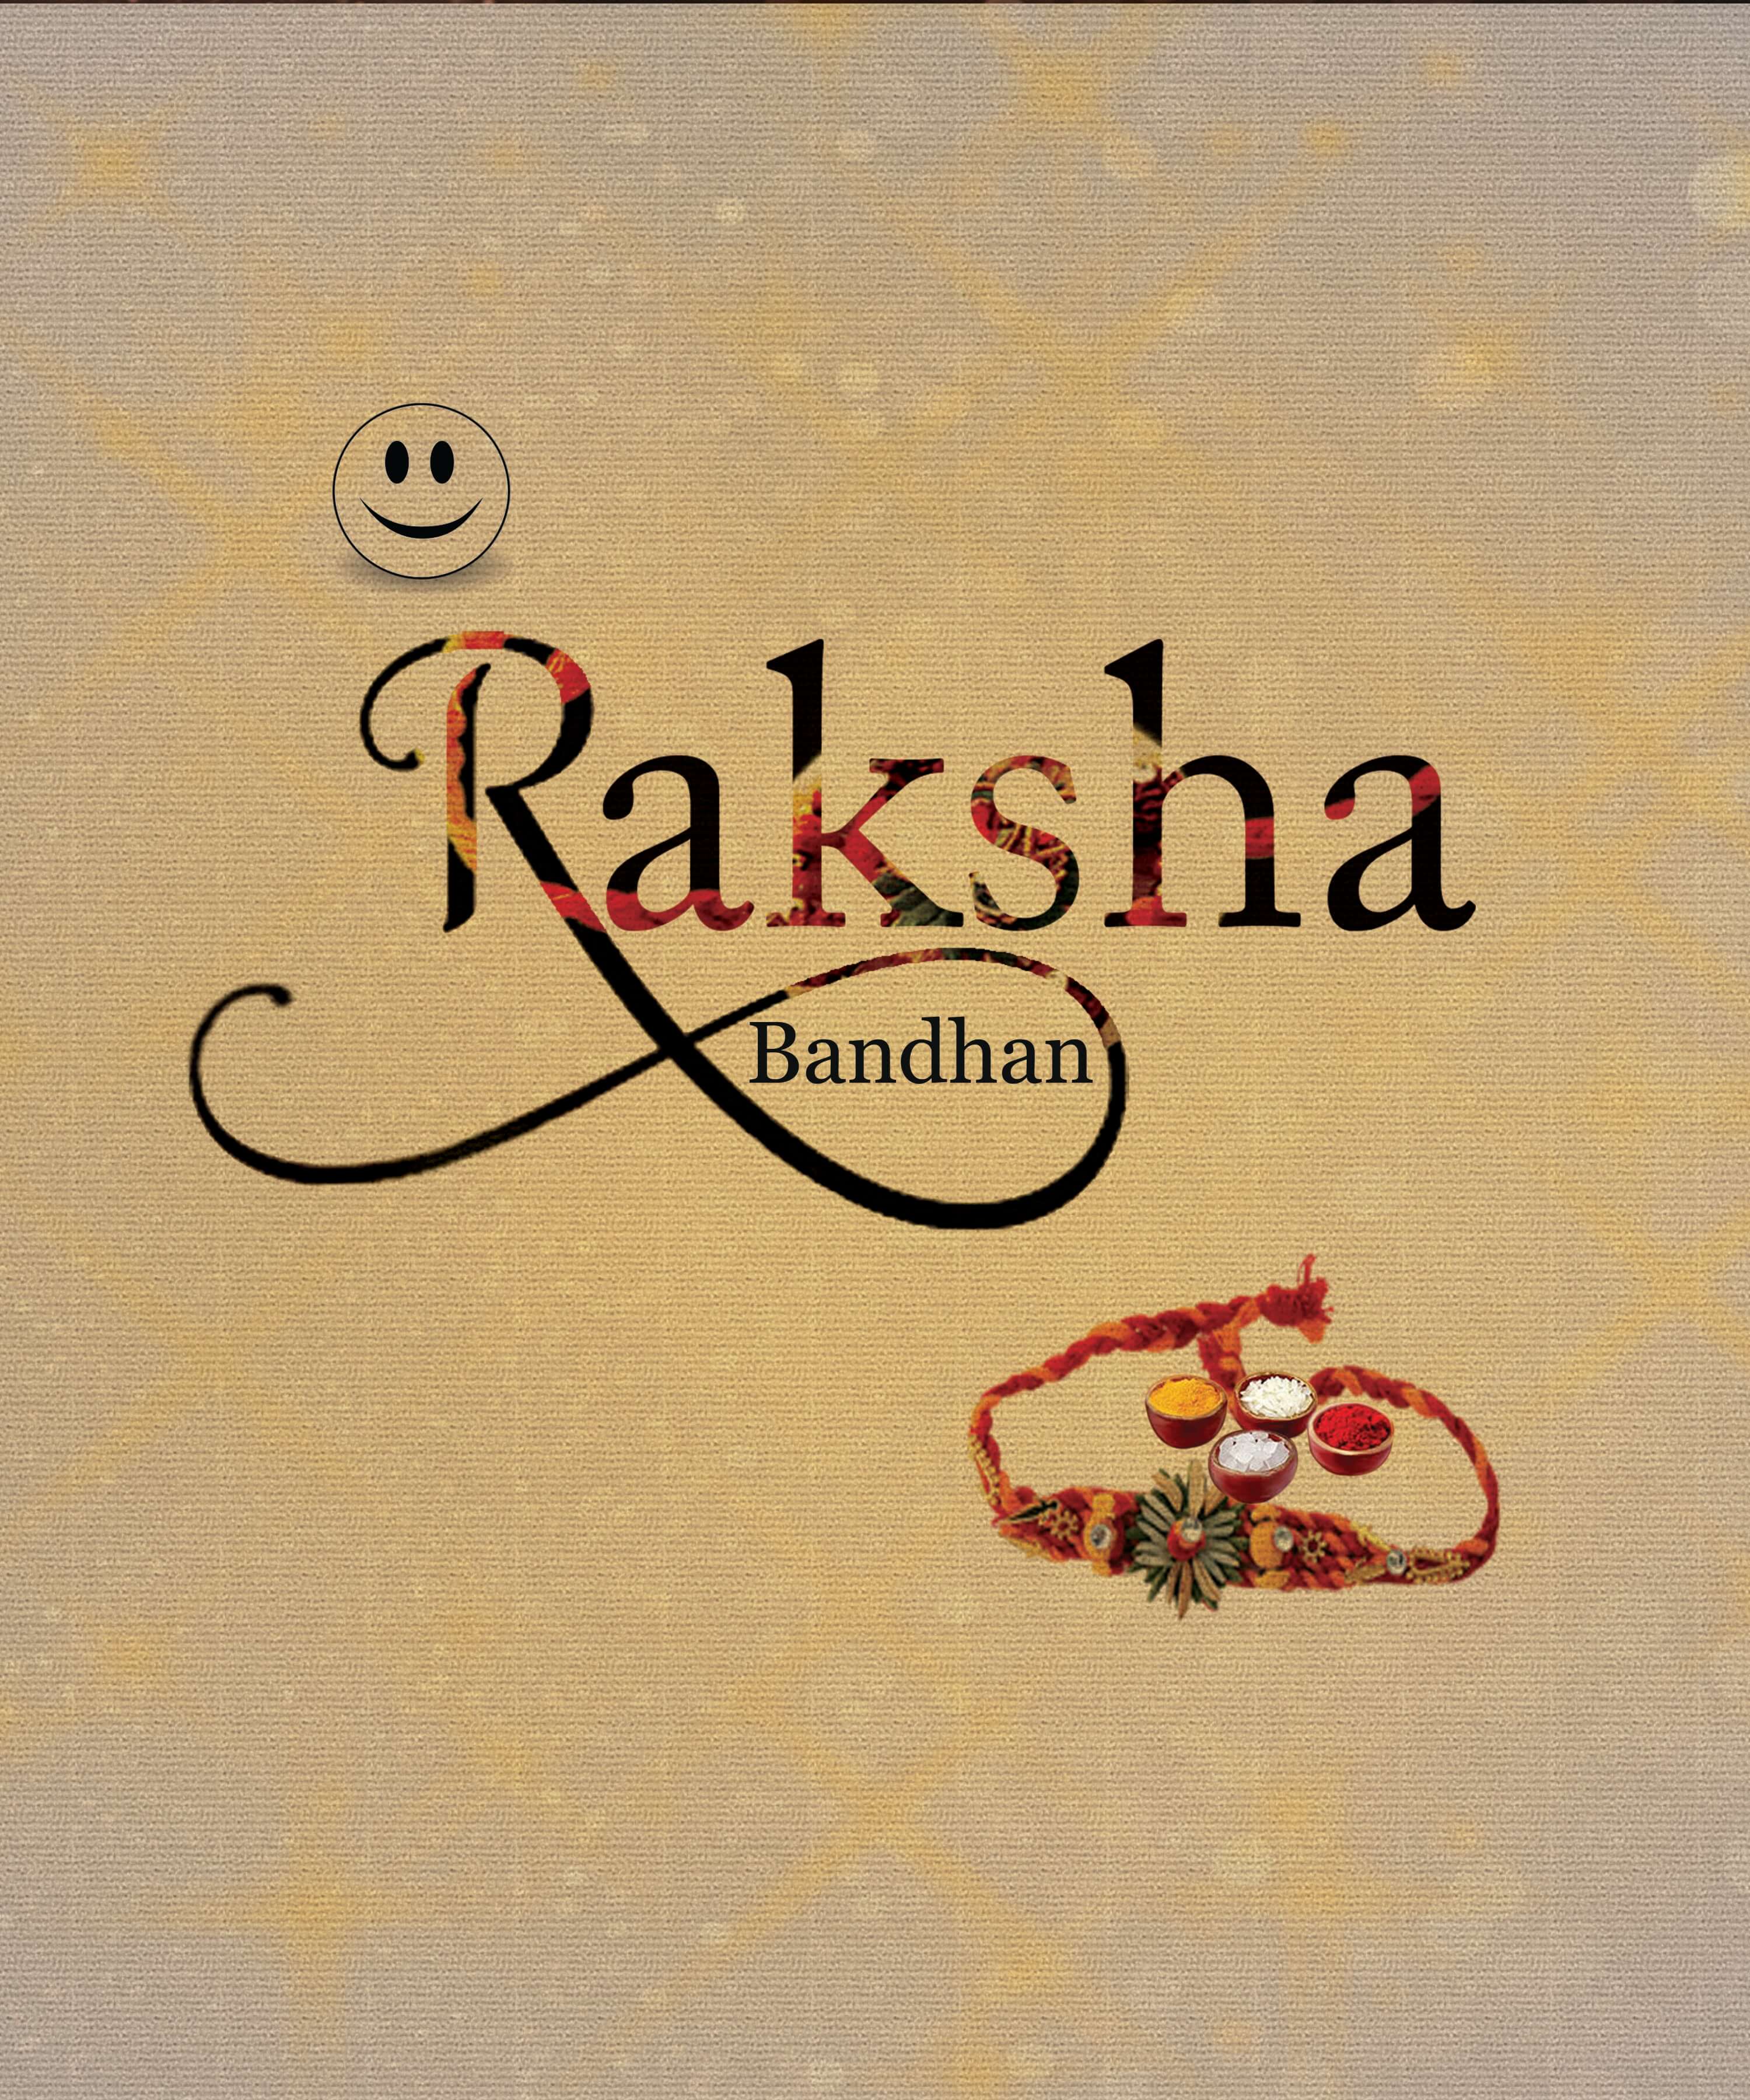 Raksha Bandhan | eGreetings Portal